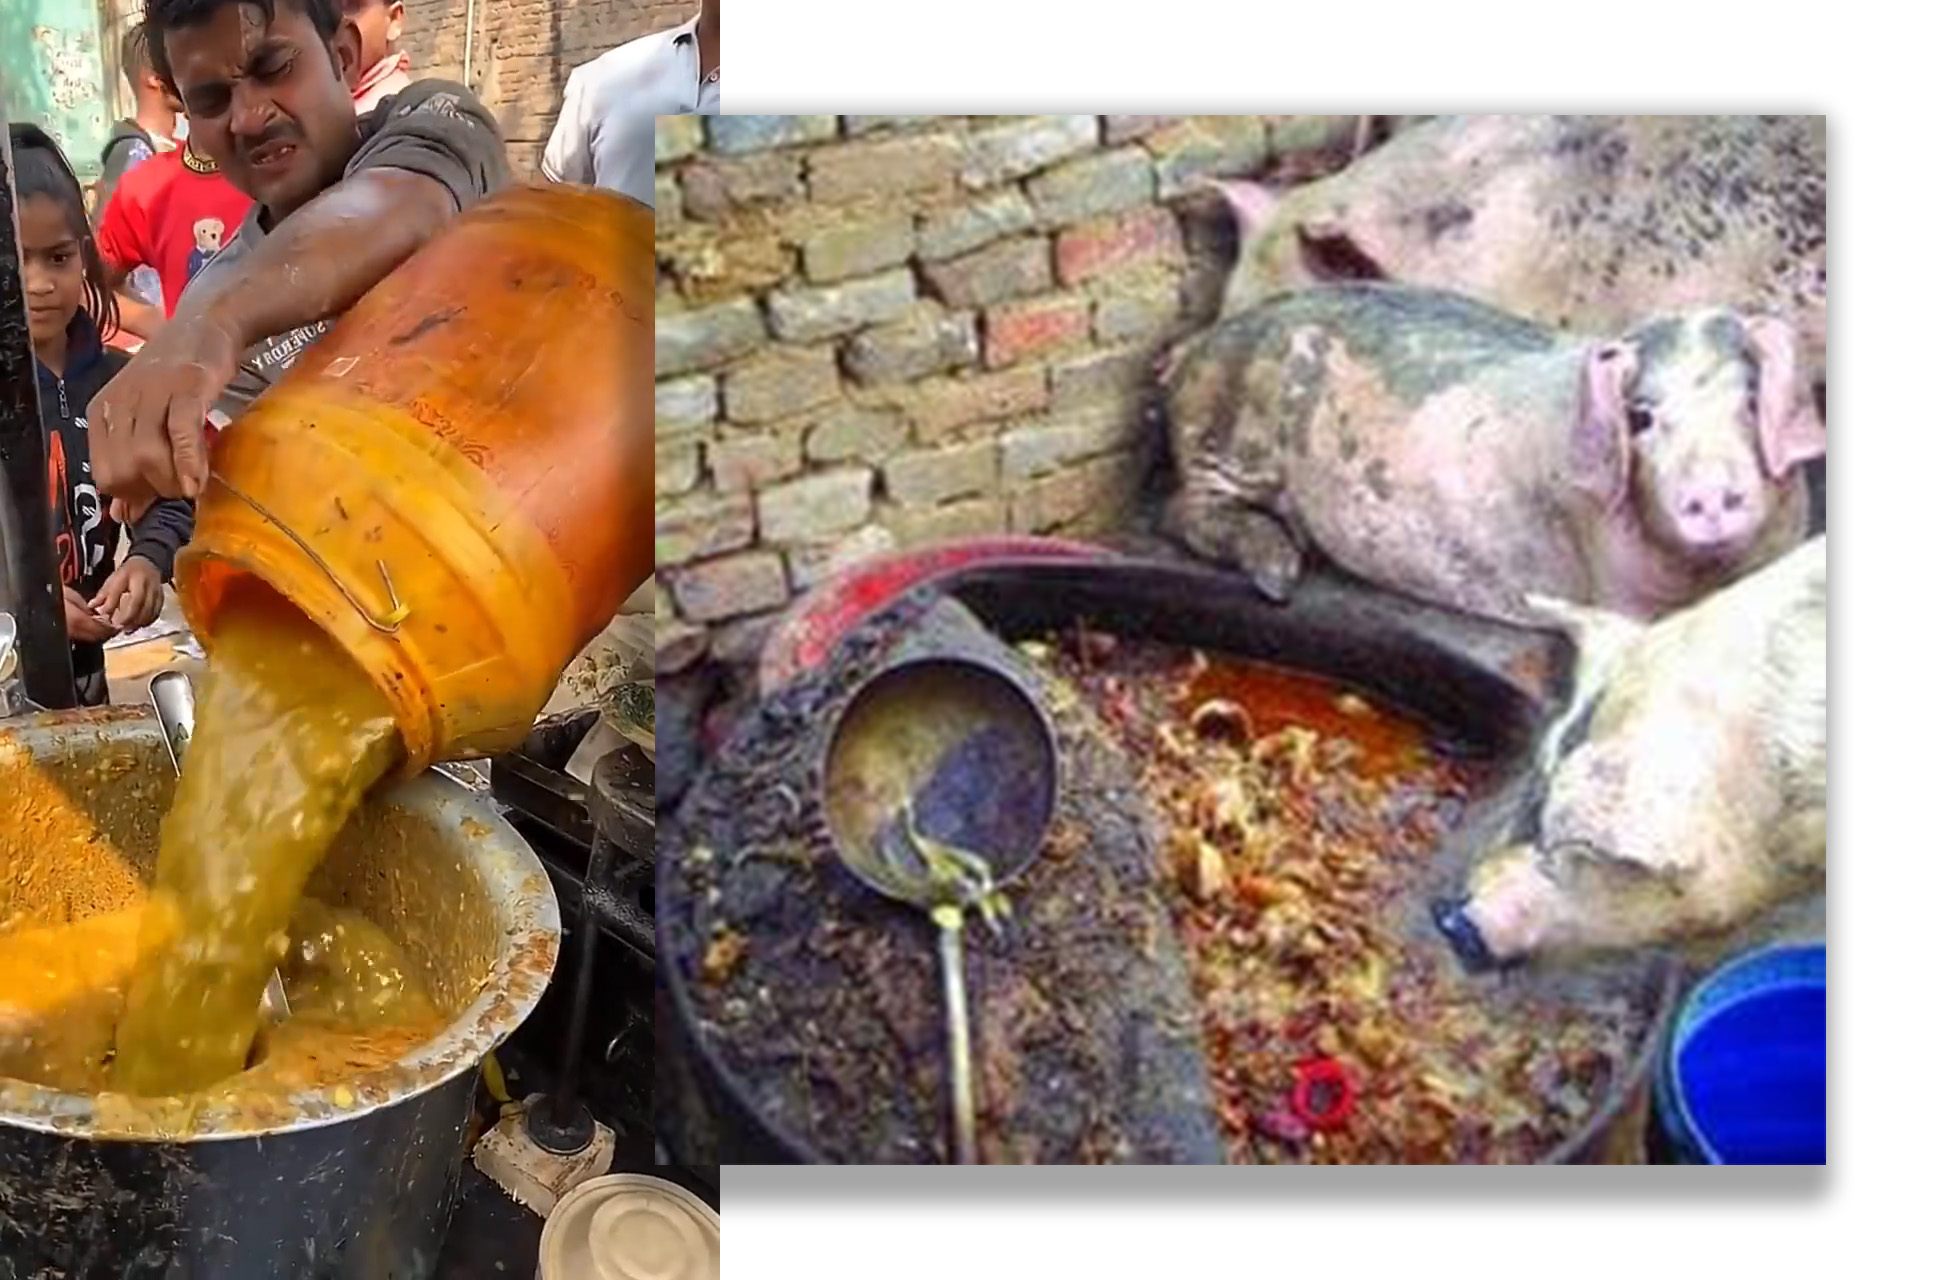 Indian food vs Pig food